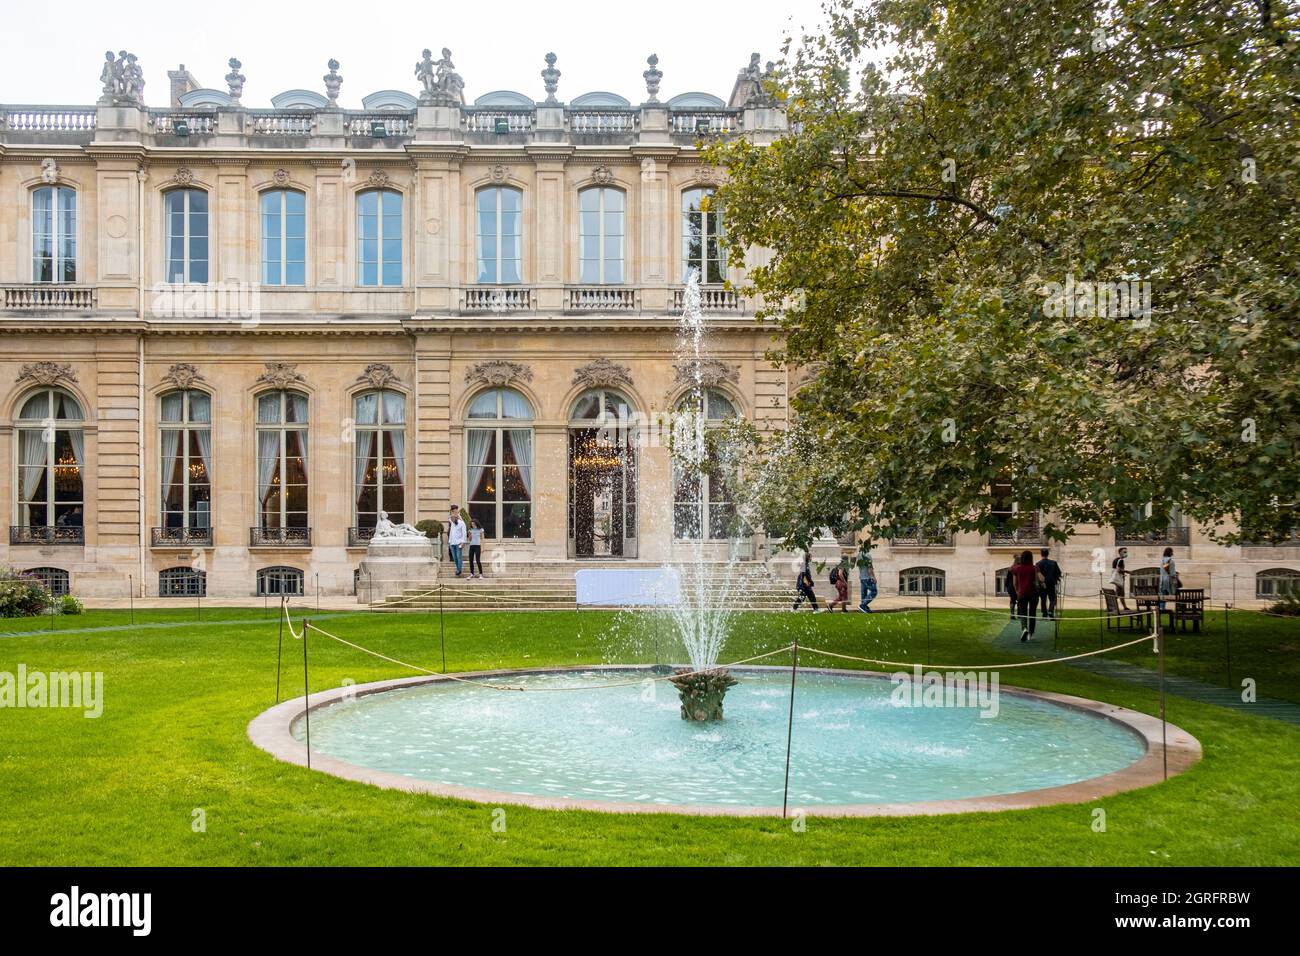 Francia, Parigi, zona dichiarata Patrimonio Mondiale dell'Umanità dall'UNESCO, il Palais Bourbon, capo dell'Assemblea Nazionale Foto Stock